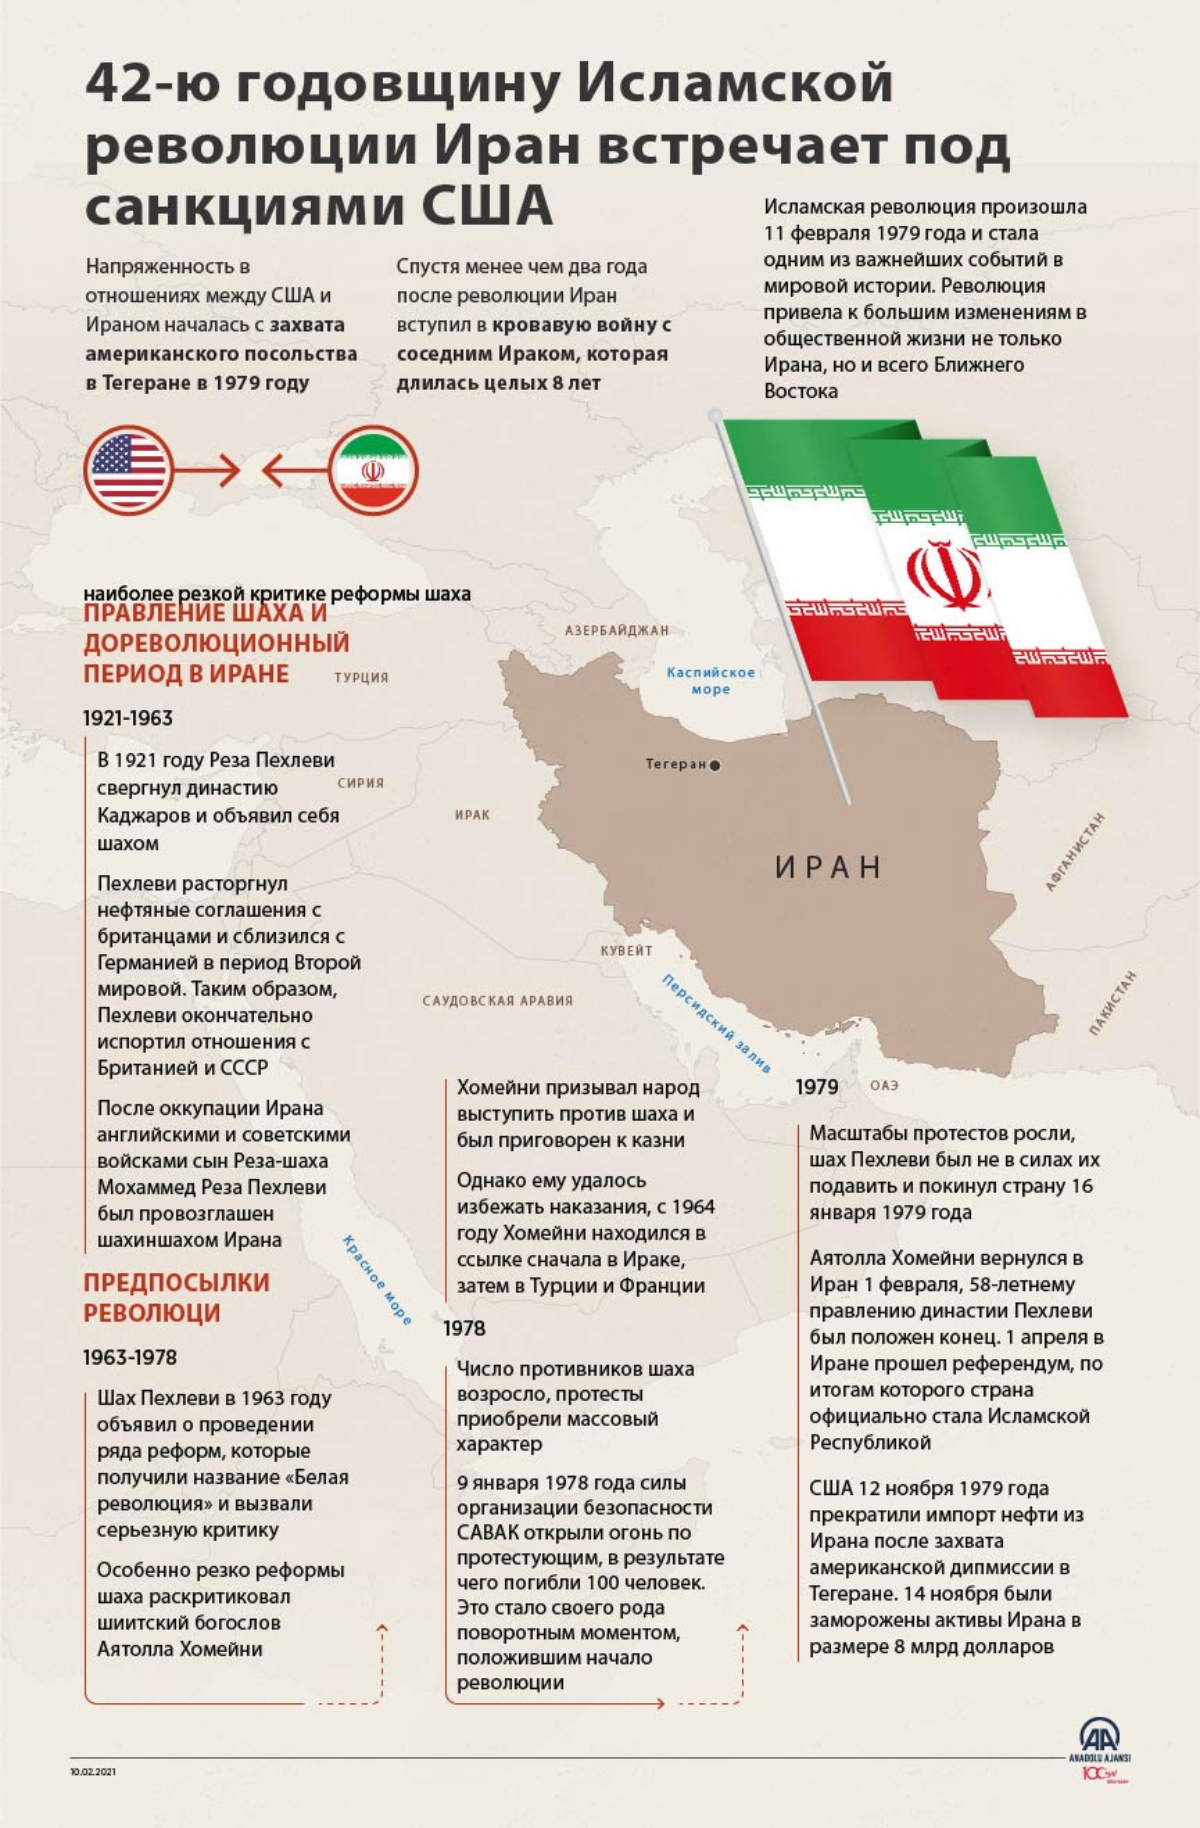 42-ю годовщину Исламской революции Иран встречает под санкциями США